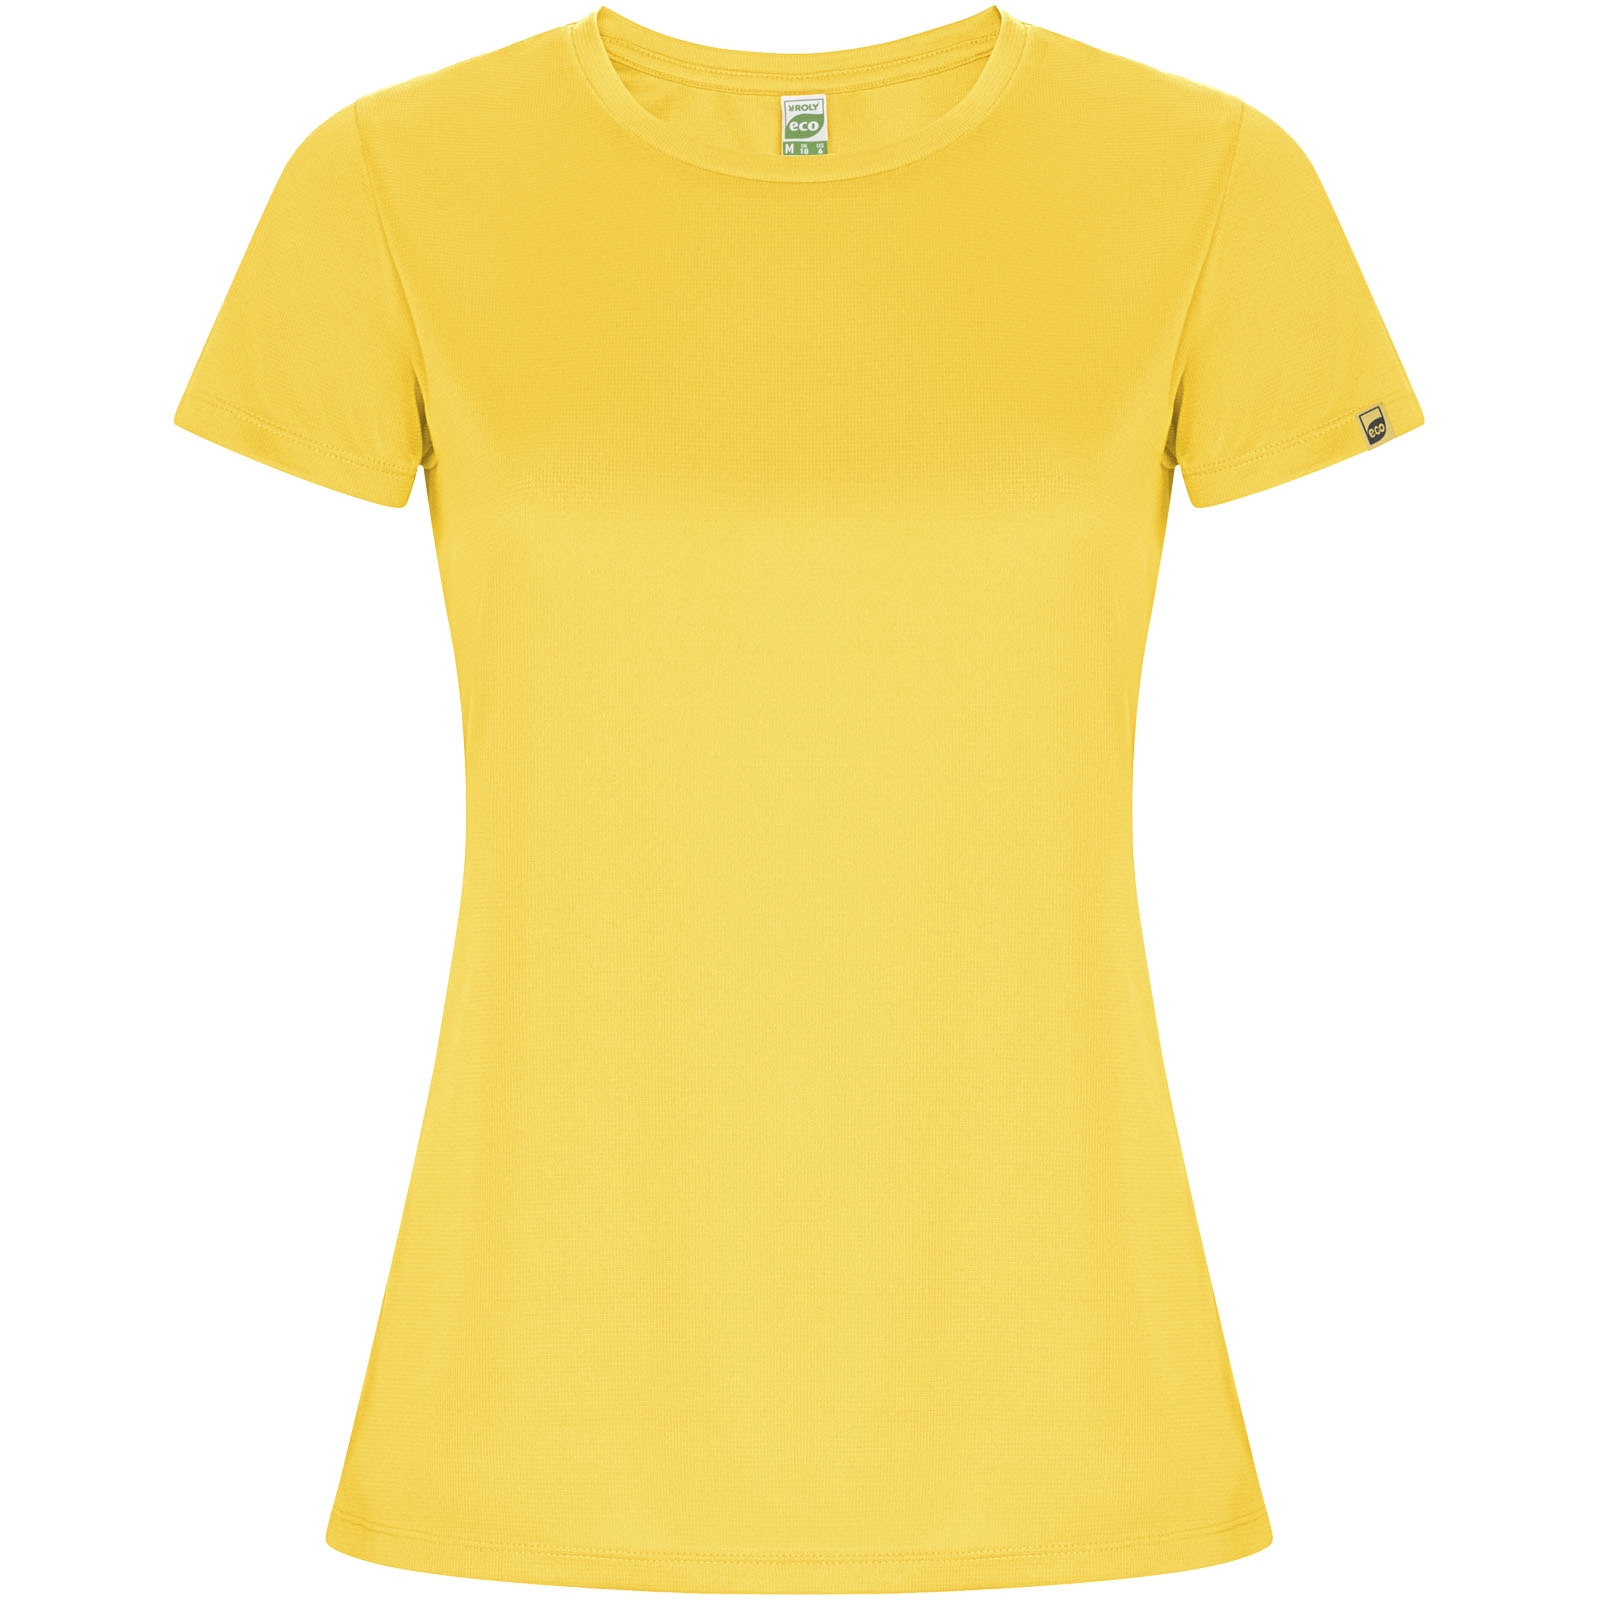 Vêtements - T-shirt sport Imola à manches courtes pour femme